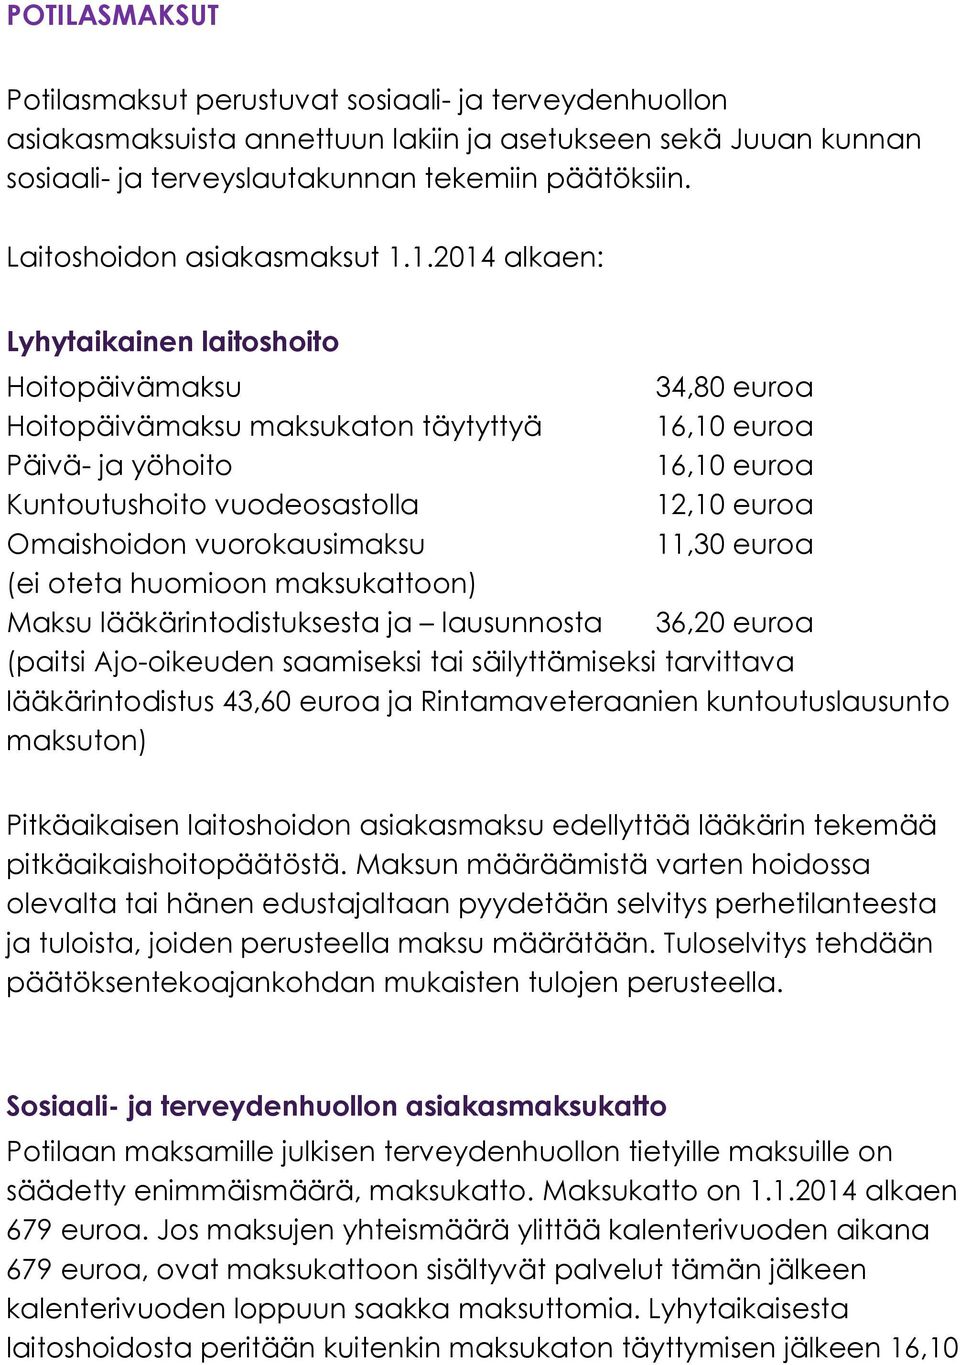 1.2014 alkaen: Lyhytaikainen laitoshoito Hoitopäivämaksu 34,80 euroa Hoitopäivämaksu maksukaton täytyttyä 16,10 euroa Päivä- ja yöhoito 16,10 euroa Kuntoutushoito vuodeosastolla 12,10 euroa